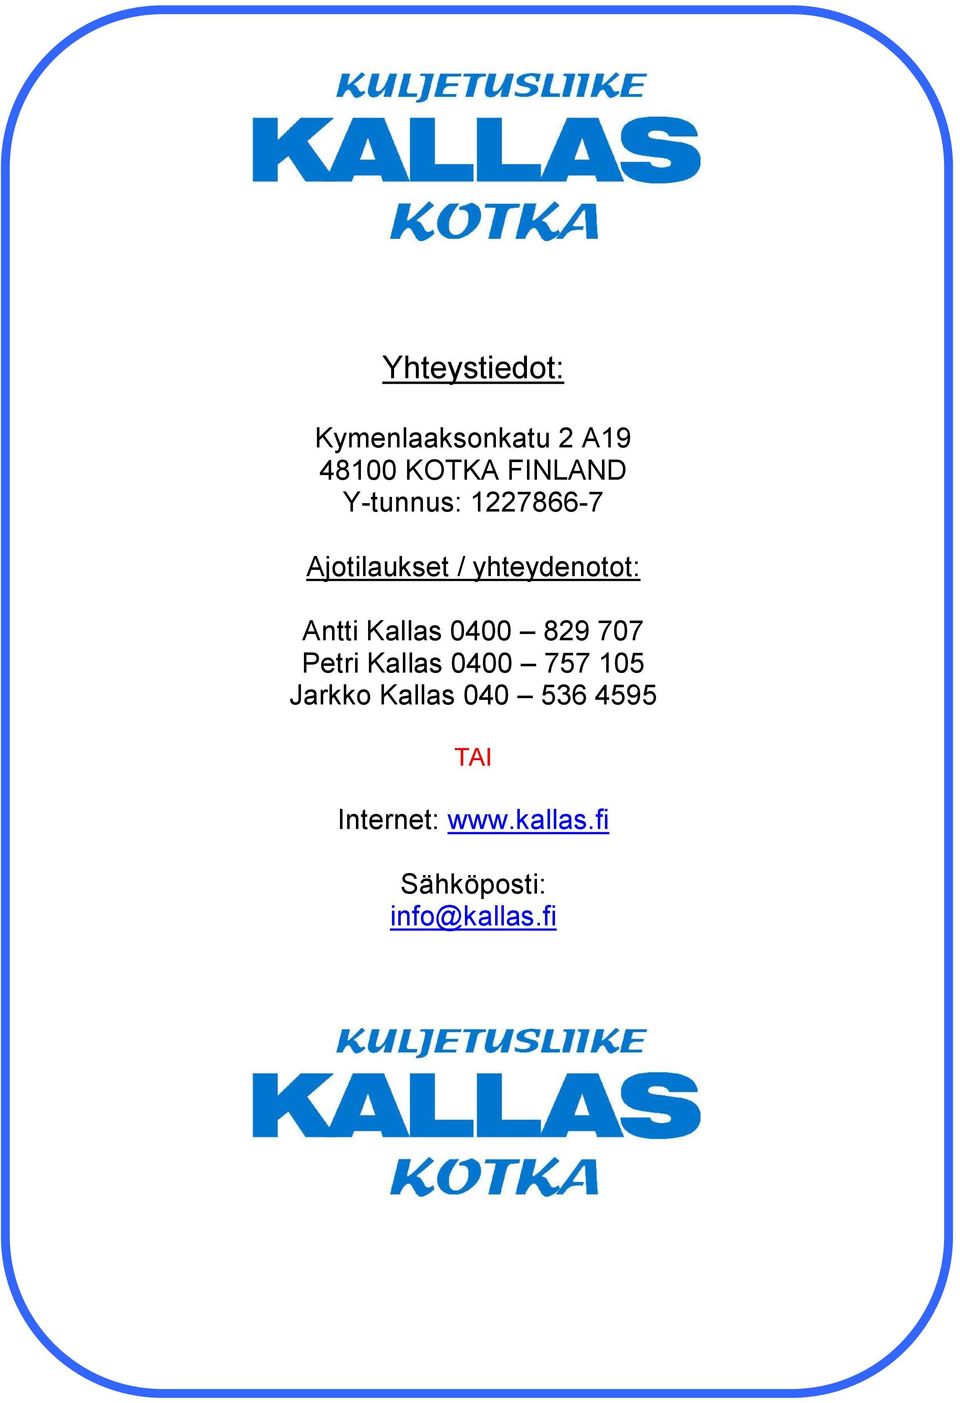 Kallas 0400 829 707 Petri Kallas 0400 757 105 Jarkko Kallas